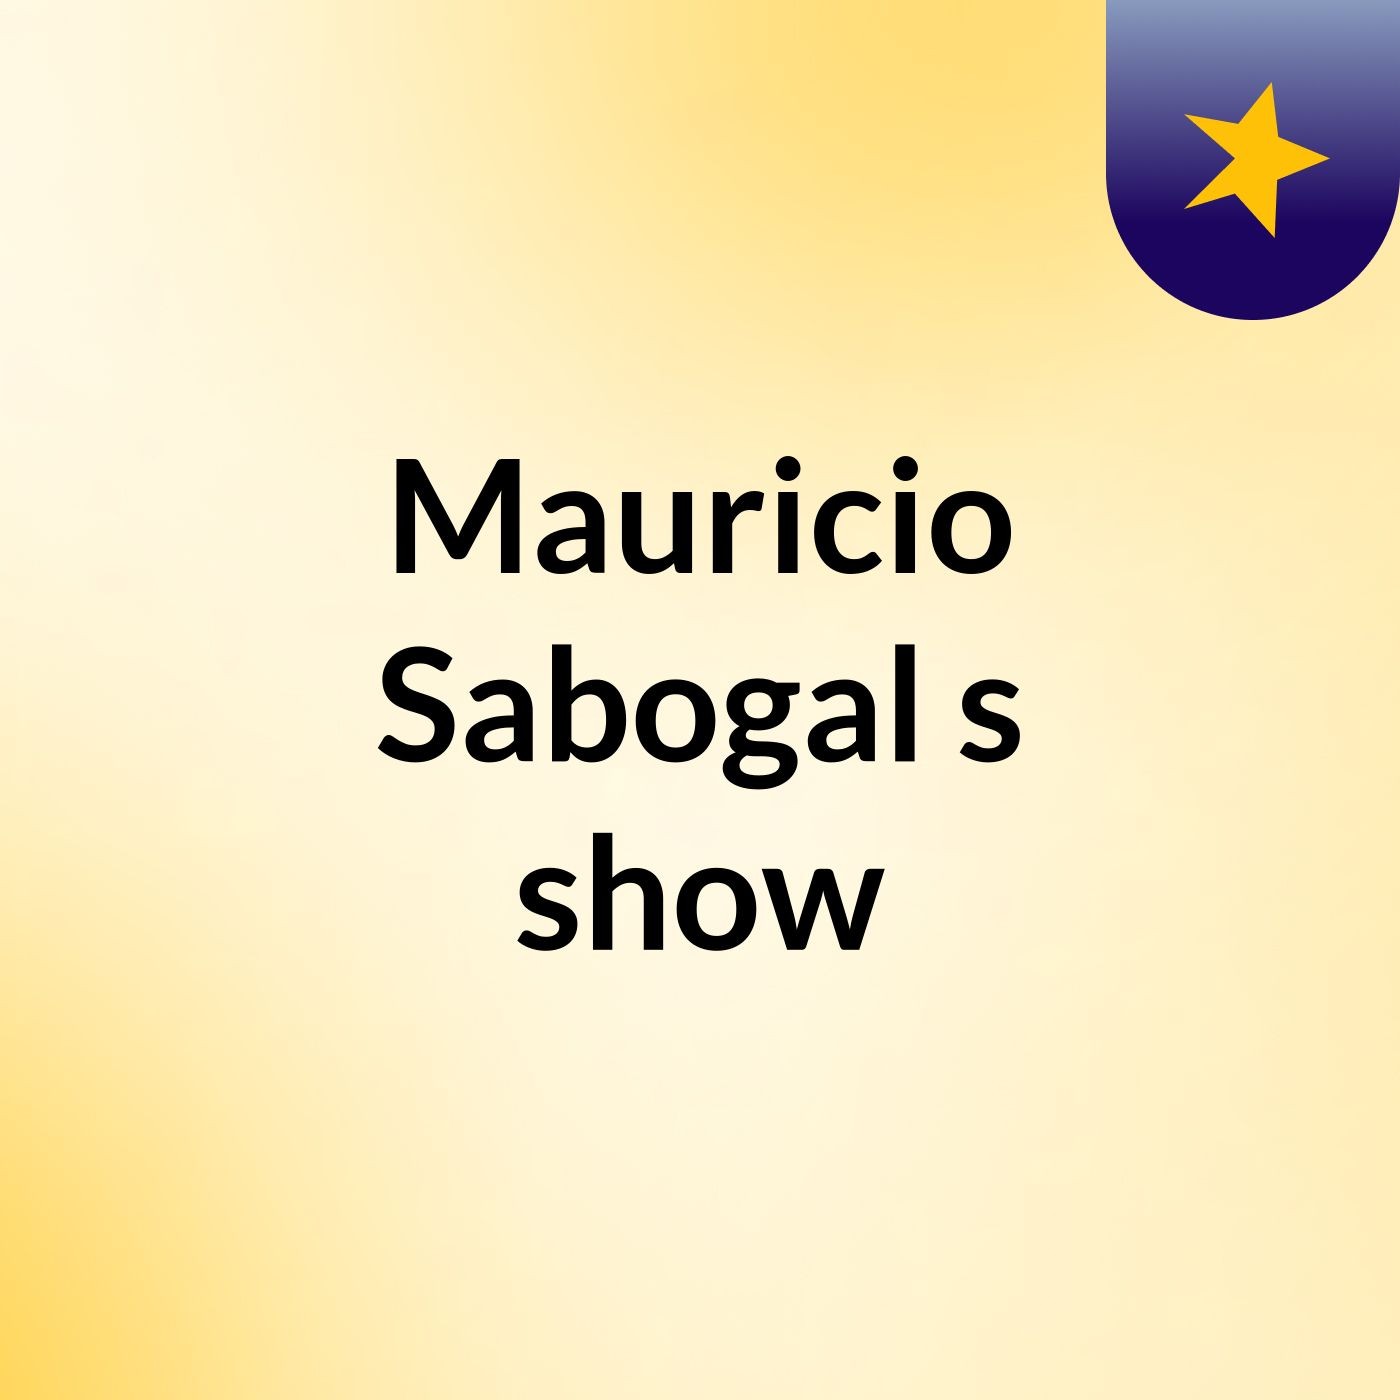 Mauricio Sabogal's show